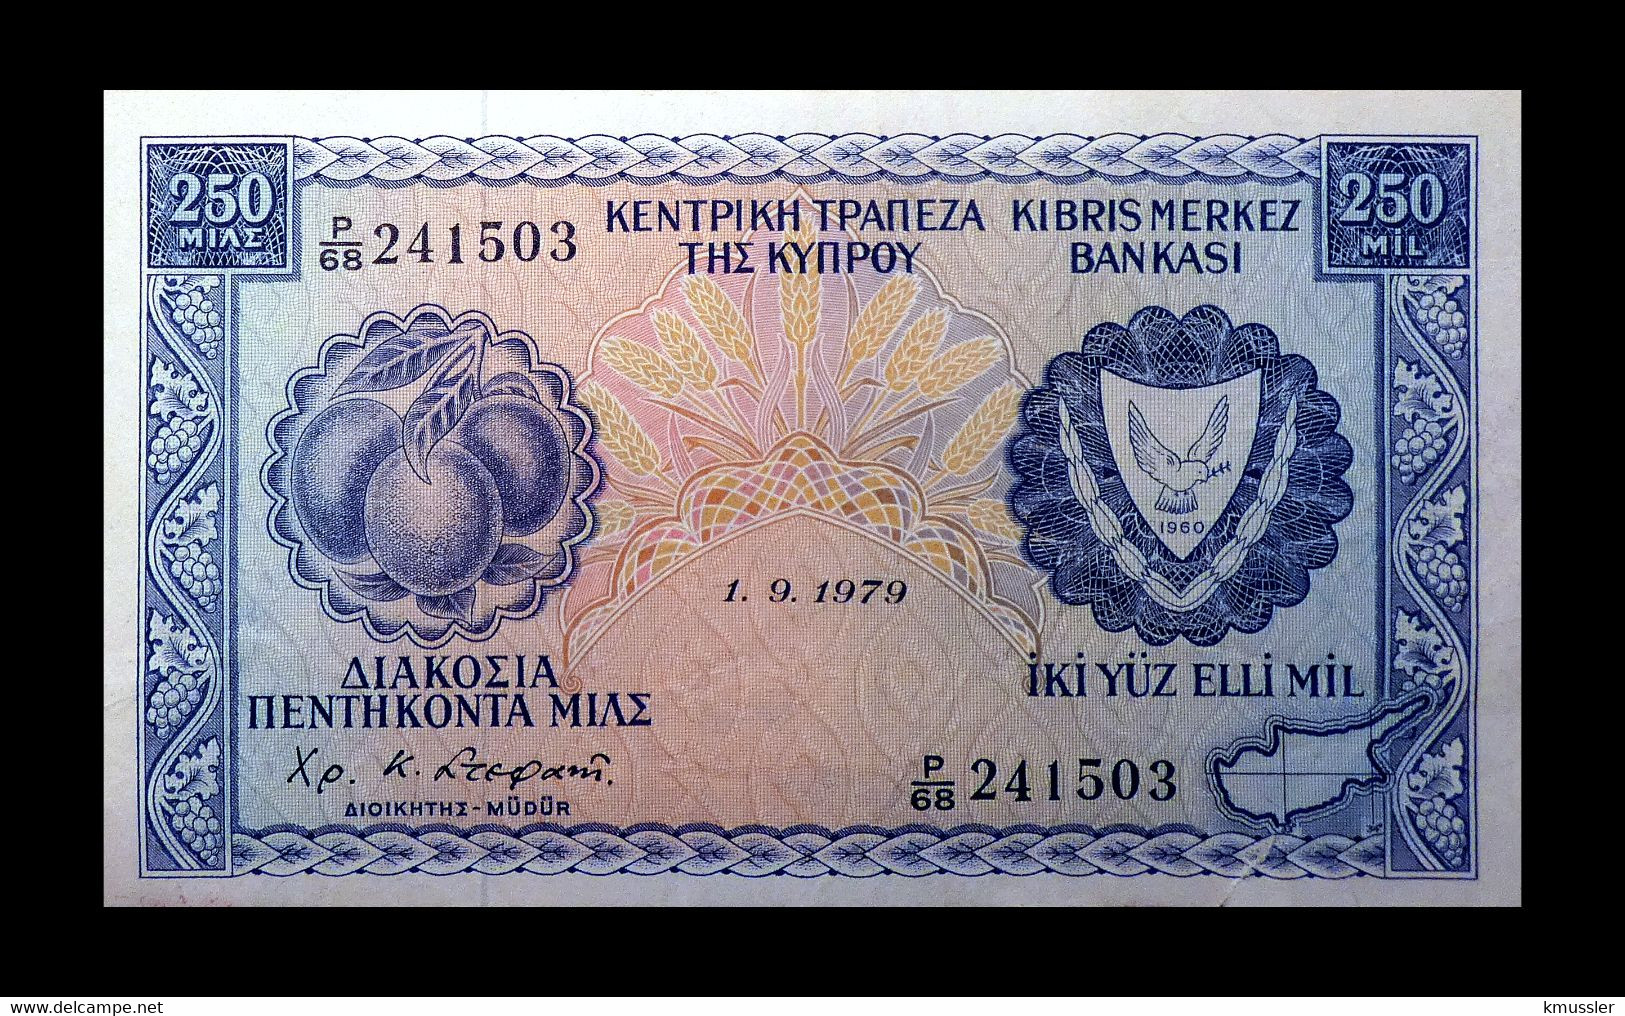 # # # Banknote Zypern (Cyprus) 250 Mils 1979 # # # - Cyprus